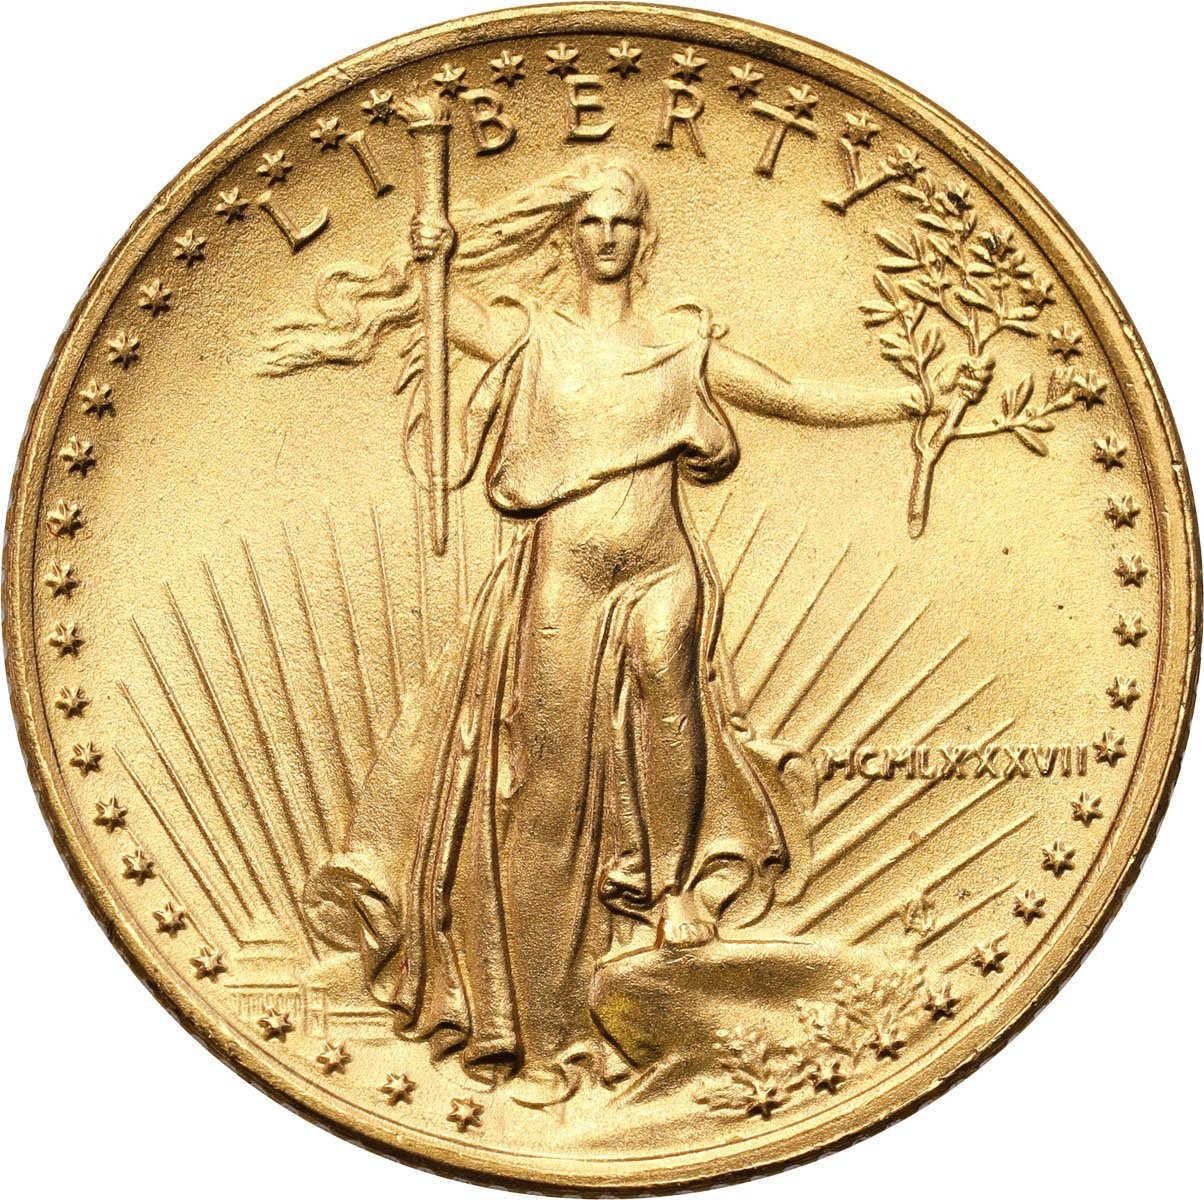 USA. Złote 5 $ dolarów 1987 Orzeł (Eagle) - 1/10 uncji złota